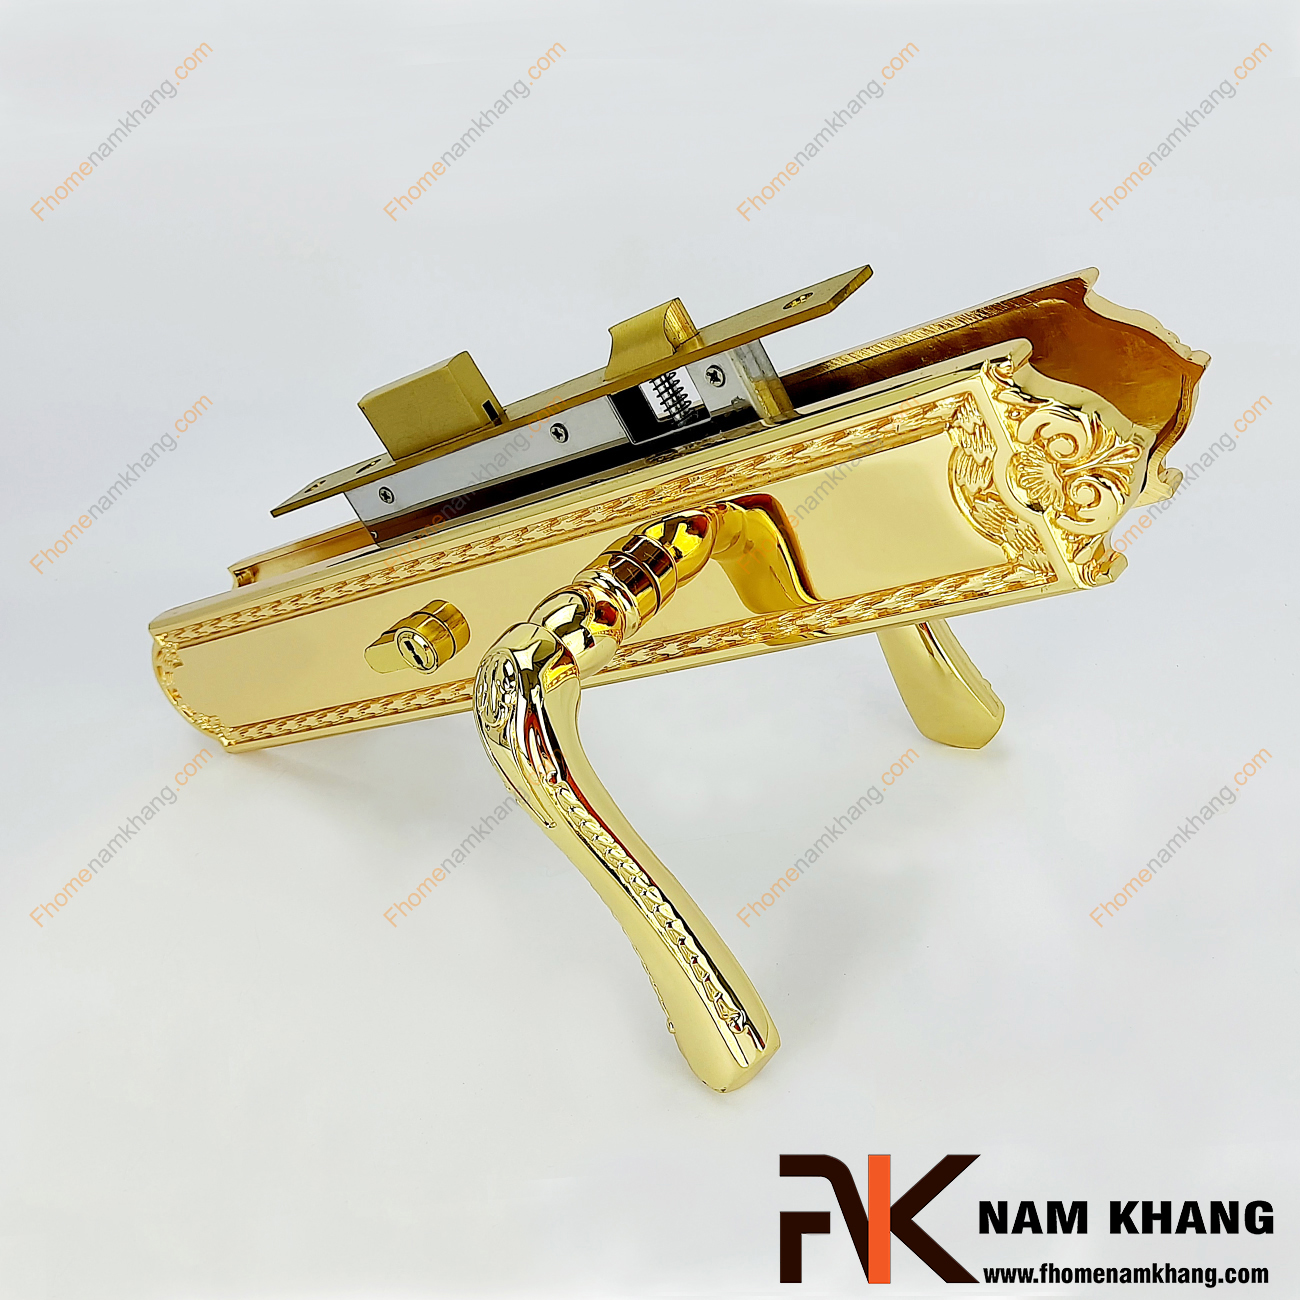 Khóa cửa chính cao cấp màu vàng bóng NK193L-24K là bộ sản phẩm khóa cửa loại lớn chuyên dùng cho các dạng cửa chính size đại, cao cấp, cửa 2 cánh, 4 cánh,..